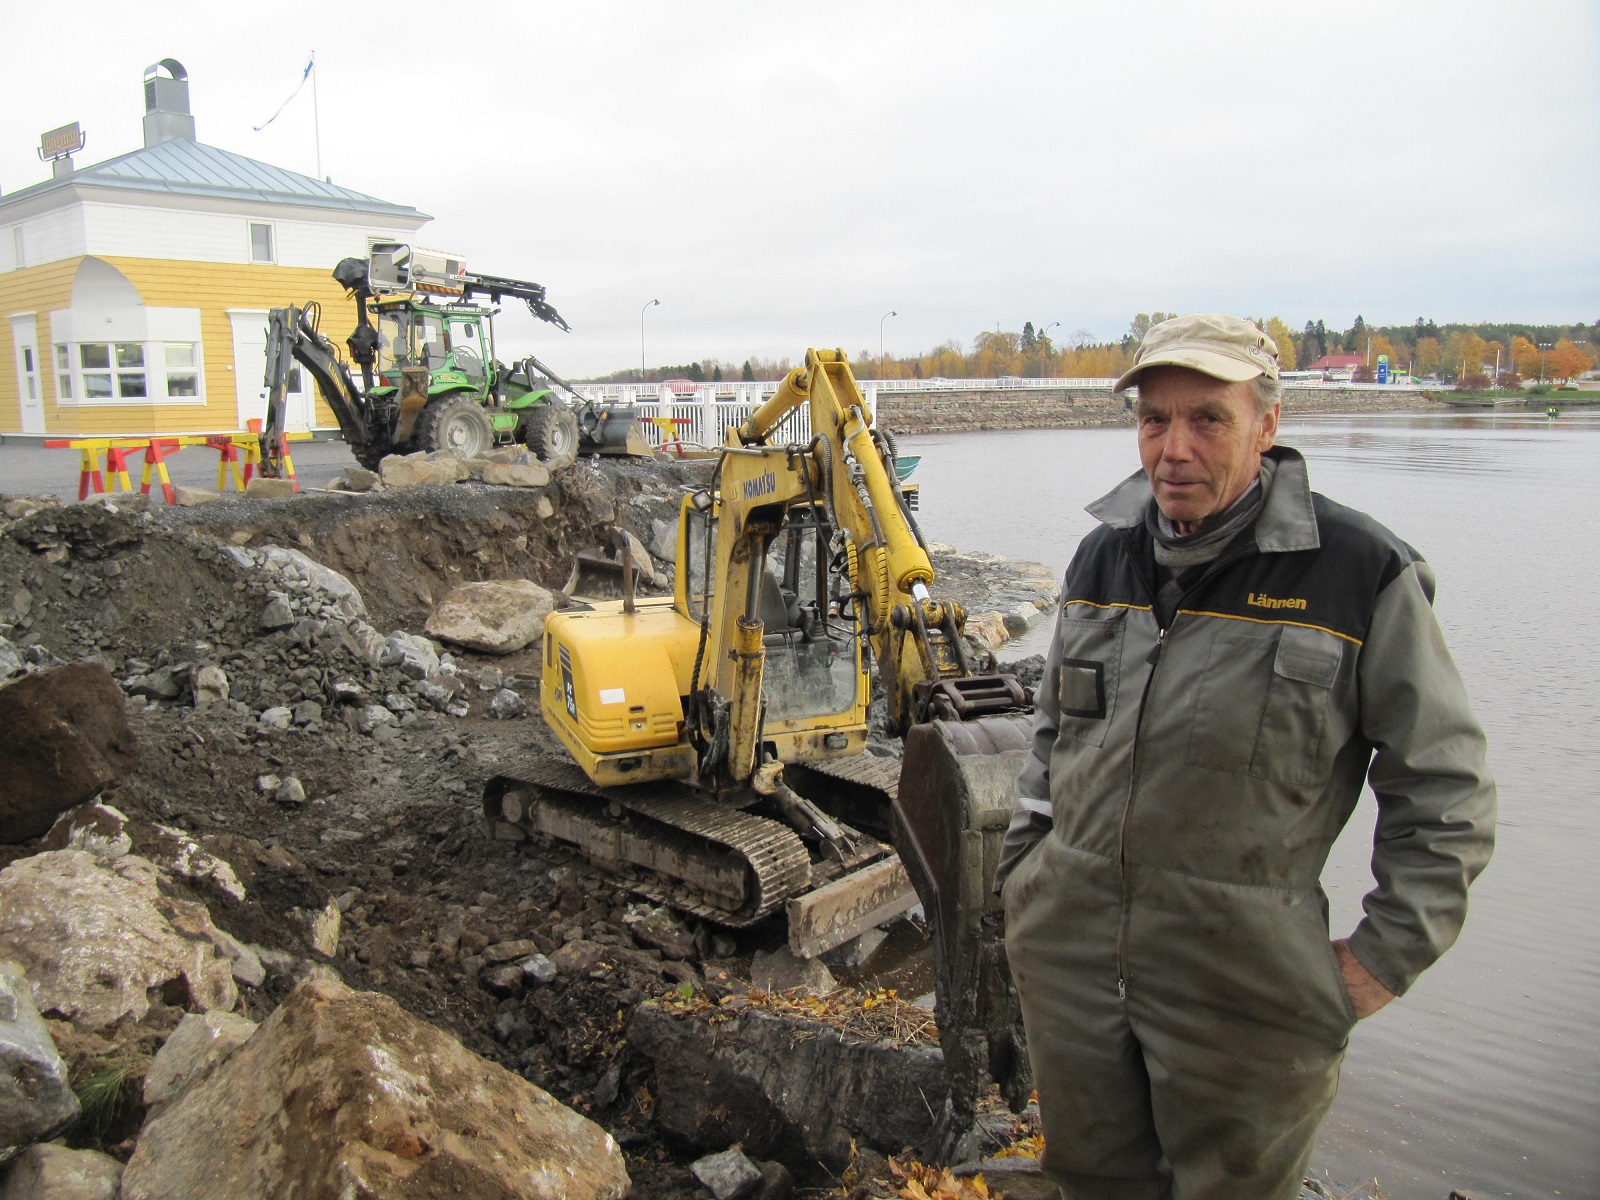 Så här "båsåt å oräidit" kan det se ut då Jukka påbörjar ett större arbete. Hösten 2014 höll han på med två grävmaskiner utanför nuvarande Jungmans restaurang vid Sjögatan.